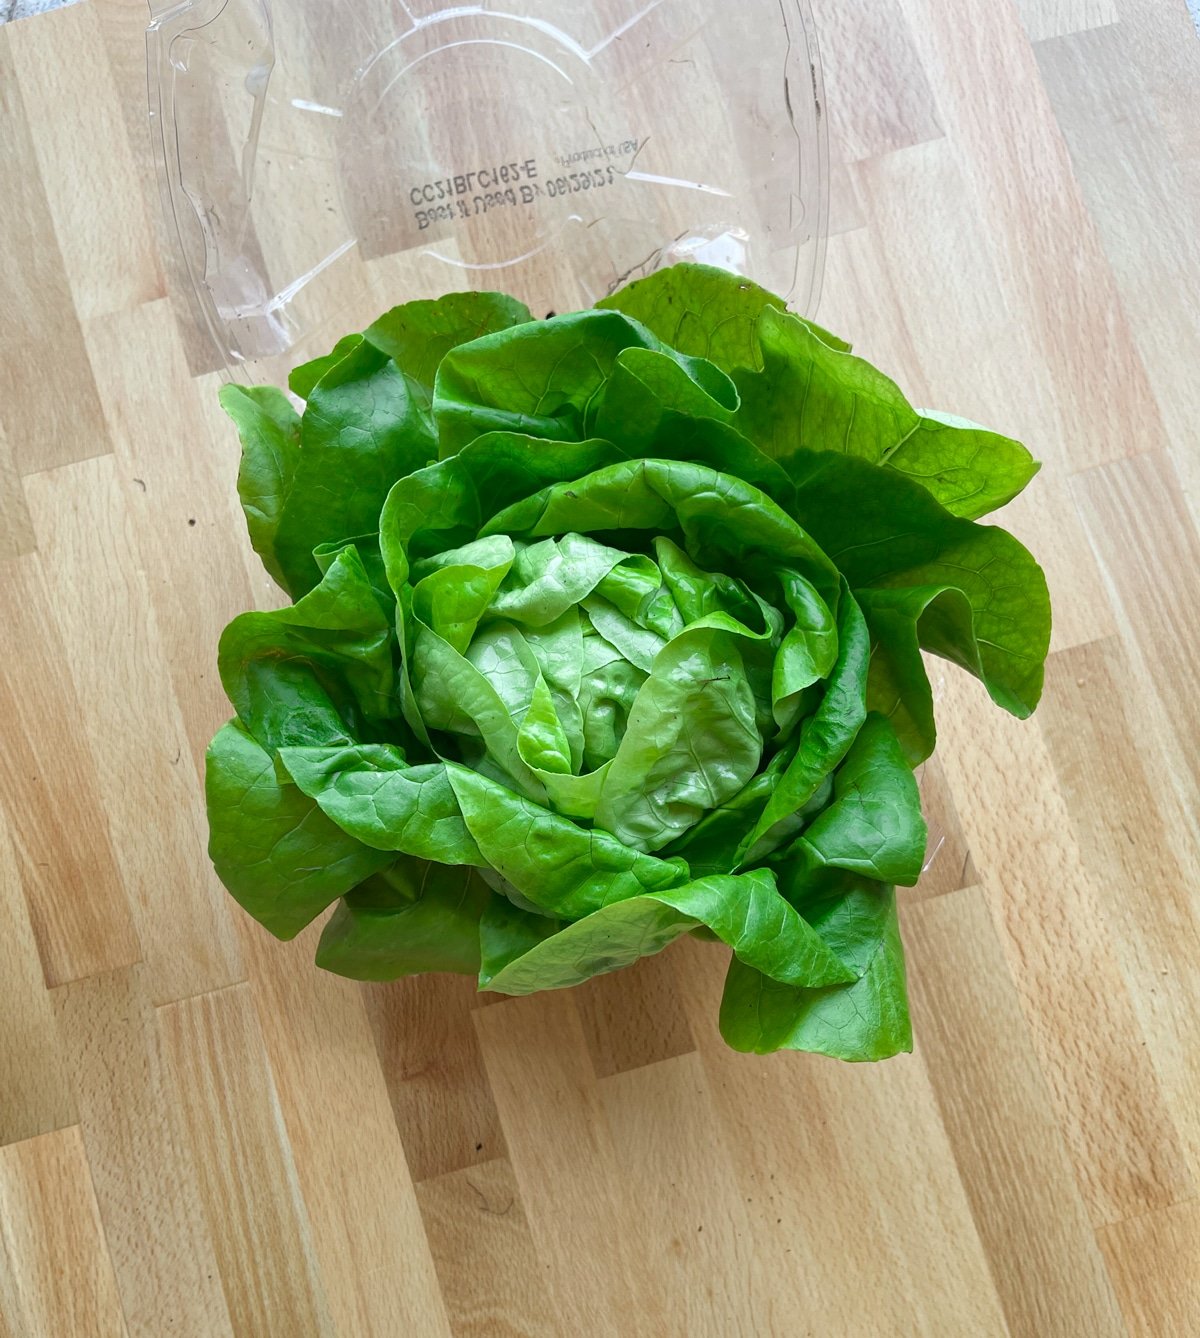 A head of live lettuce in a bin.